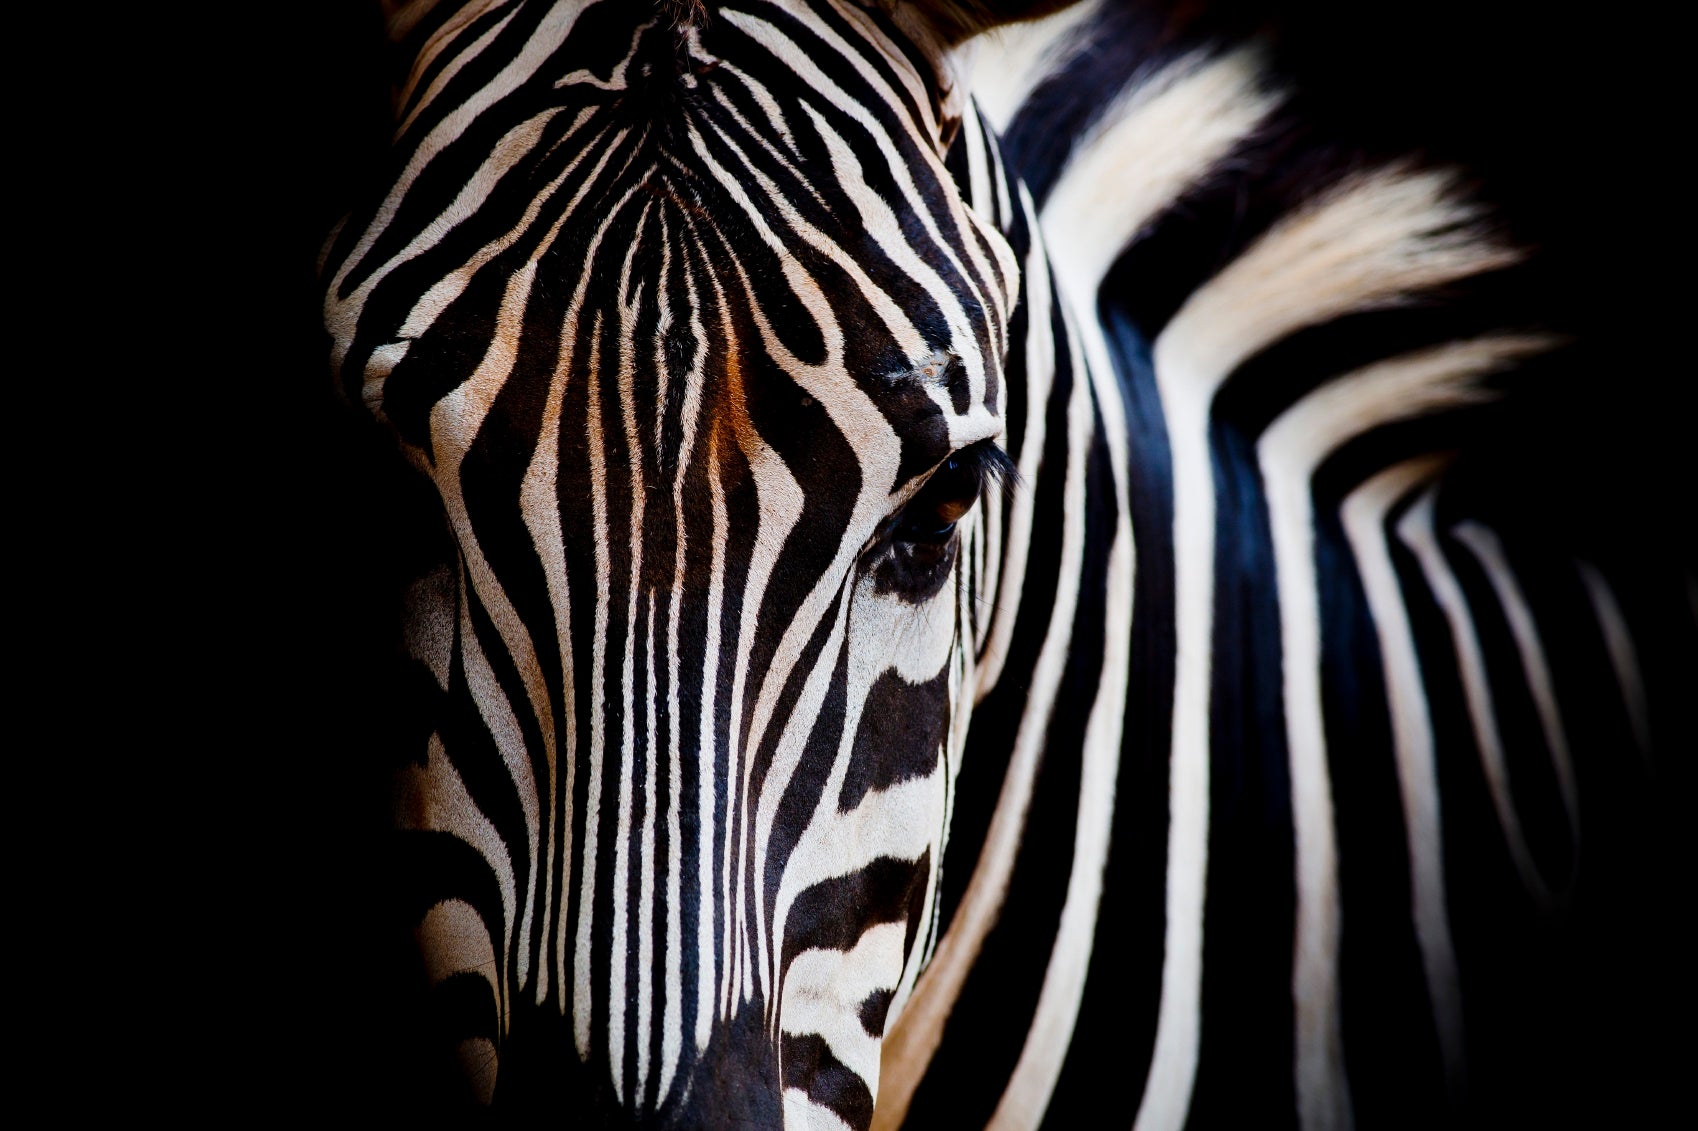 A close-up of a zebra